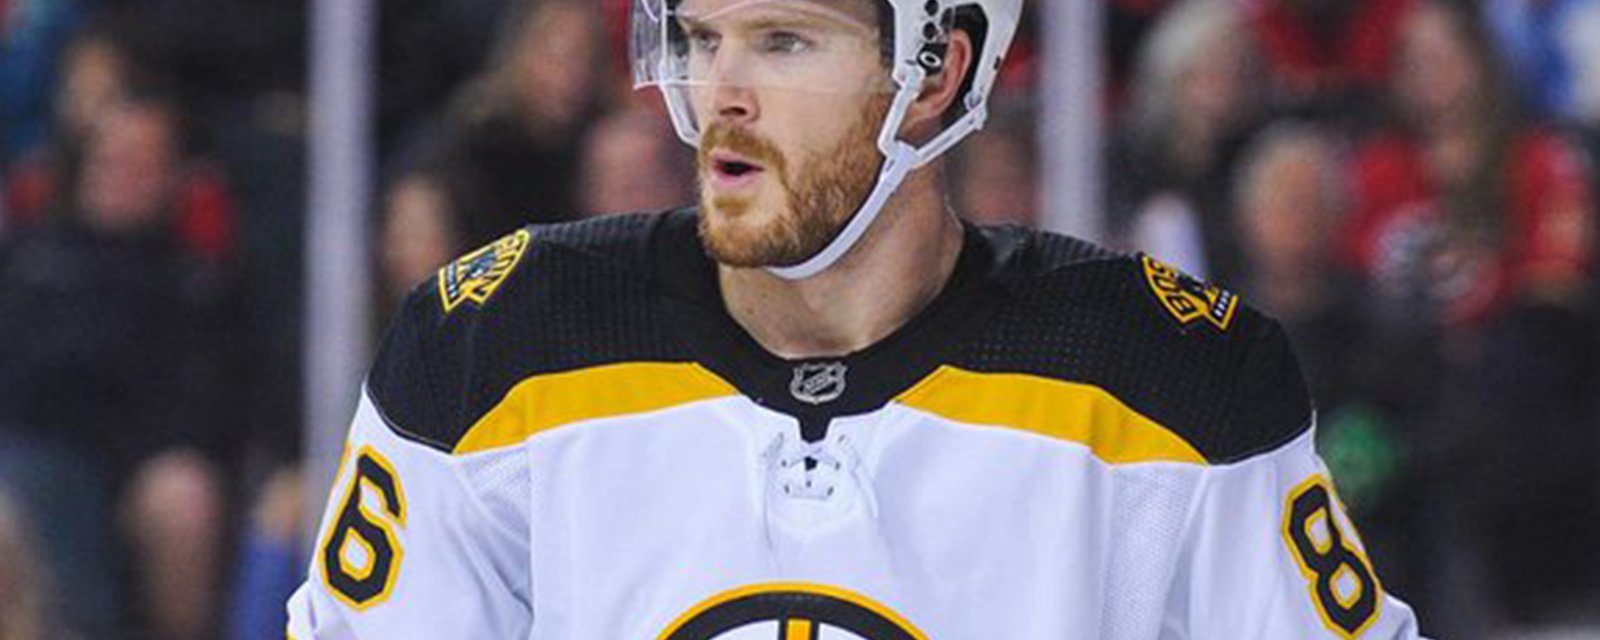 Breaking: Bruins issue an update on injured defenseman Miller